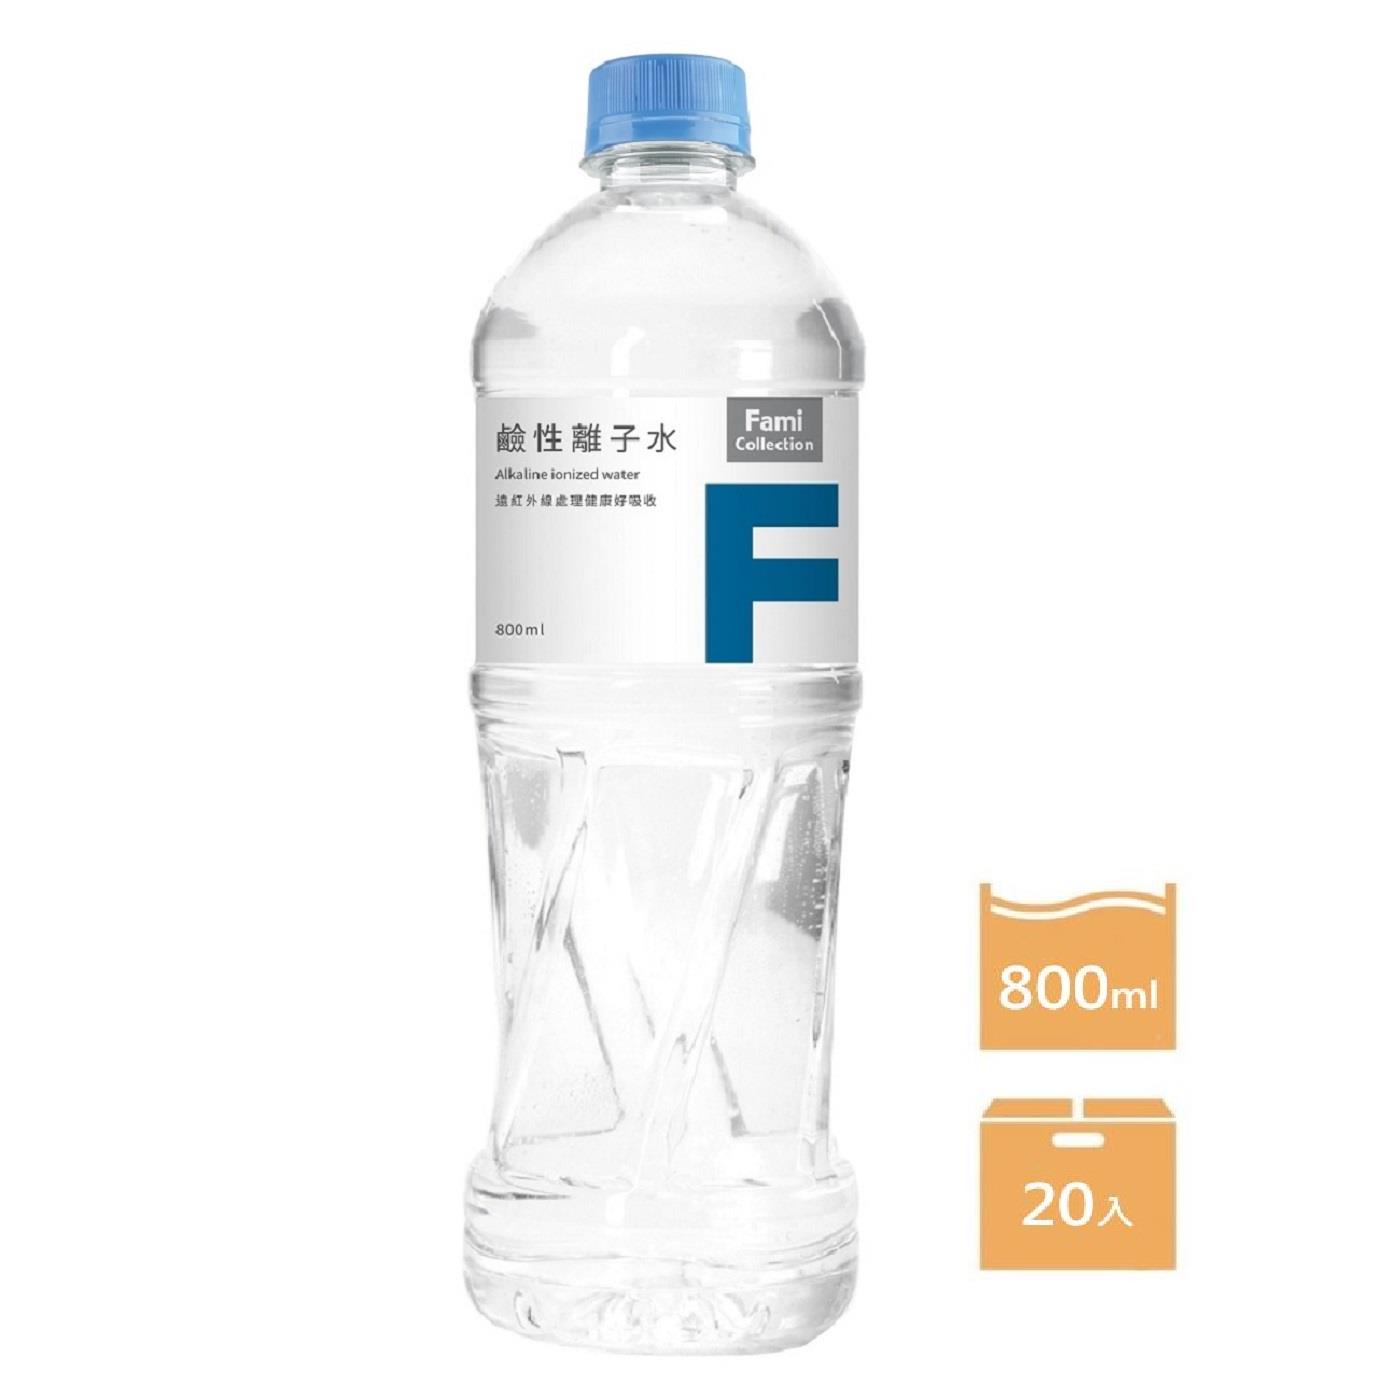 【FMC】箱購FMC鹼性離子水800ml(800mlx20)(效期至2024/09/25)